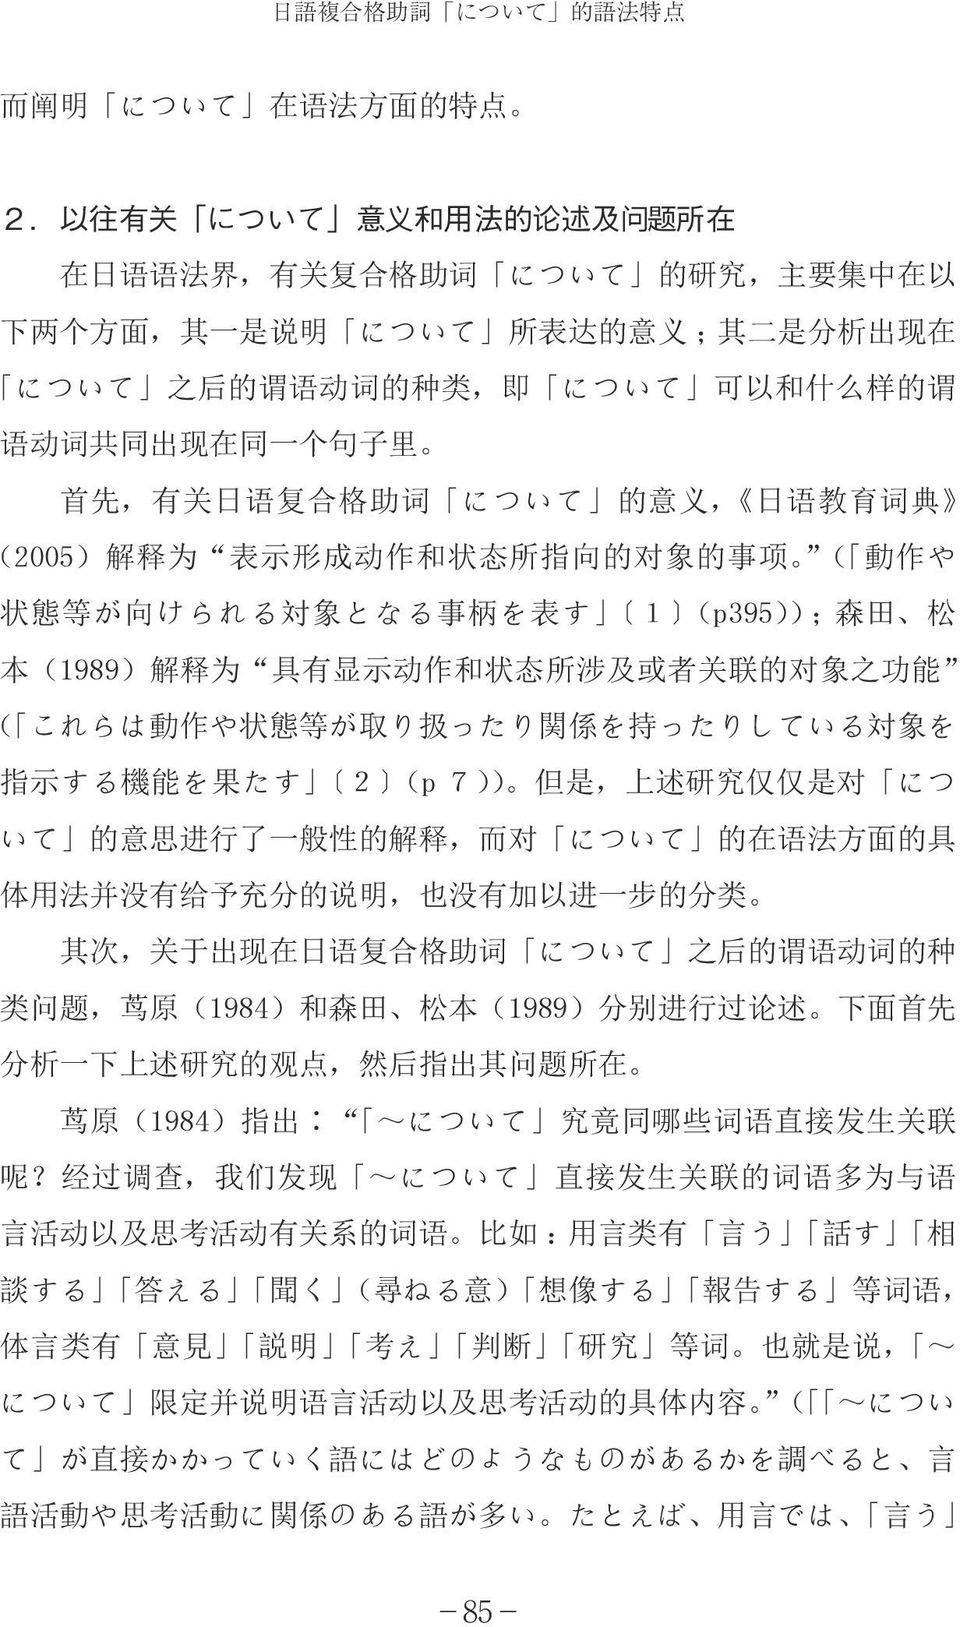 词 共 同 出 现 在 同 一 个 句 子 里 首 先, 有 关 日 语 复 合 格 助 词 について 的 意 义, 日 语 教 育 词 典 (2005) 解 释 为 表 示 形 成 动 作 和 状 态 所 指 向 的 对 象 的 事 项 ( 動 作 や 状 態 等 が 向 けられる 対 象 となる 事 柄 を 表 す 1 (p395)); 森 田 松 本 (1989) 解 释 为 具 有 显